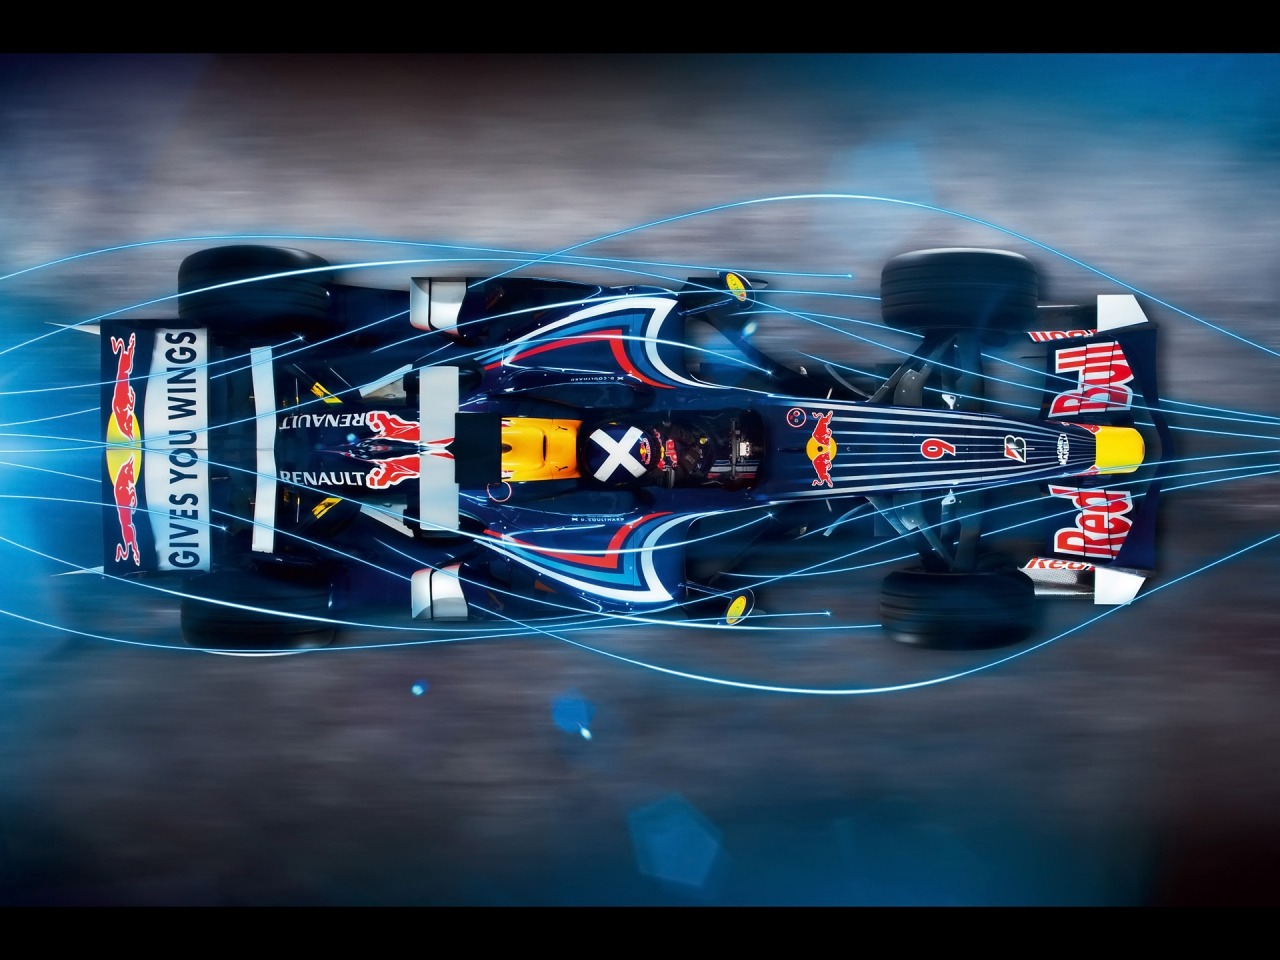 FunMozar Red Bull Formula 1 Wallpapers